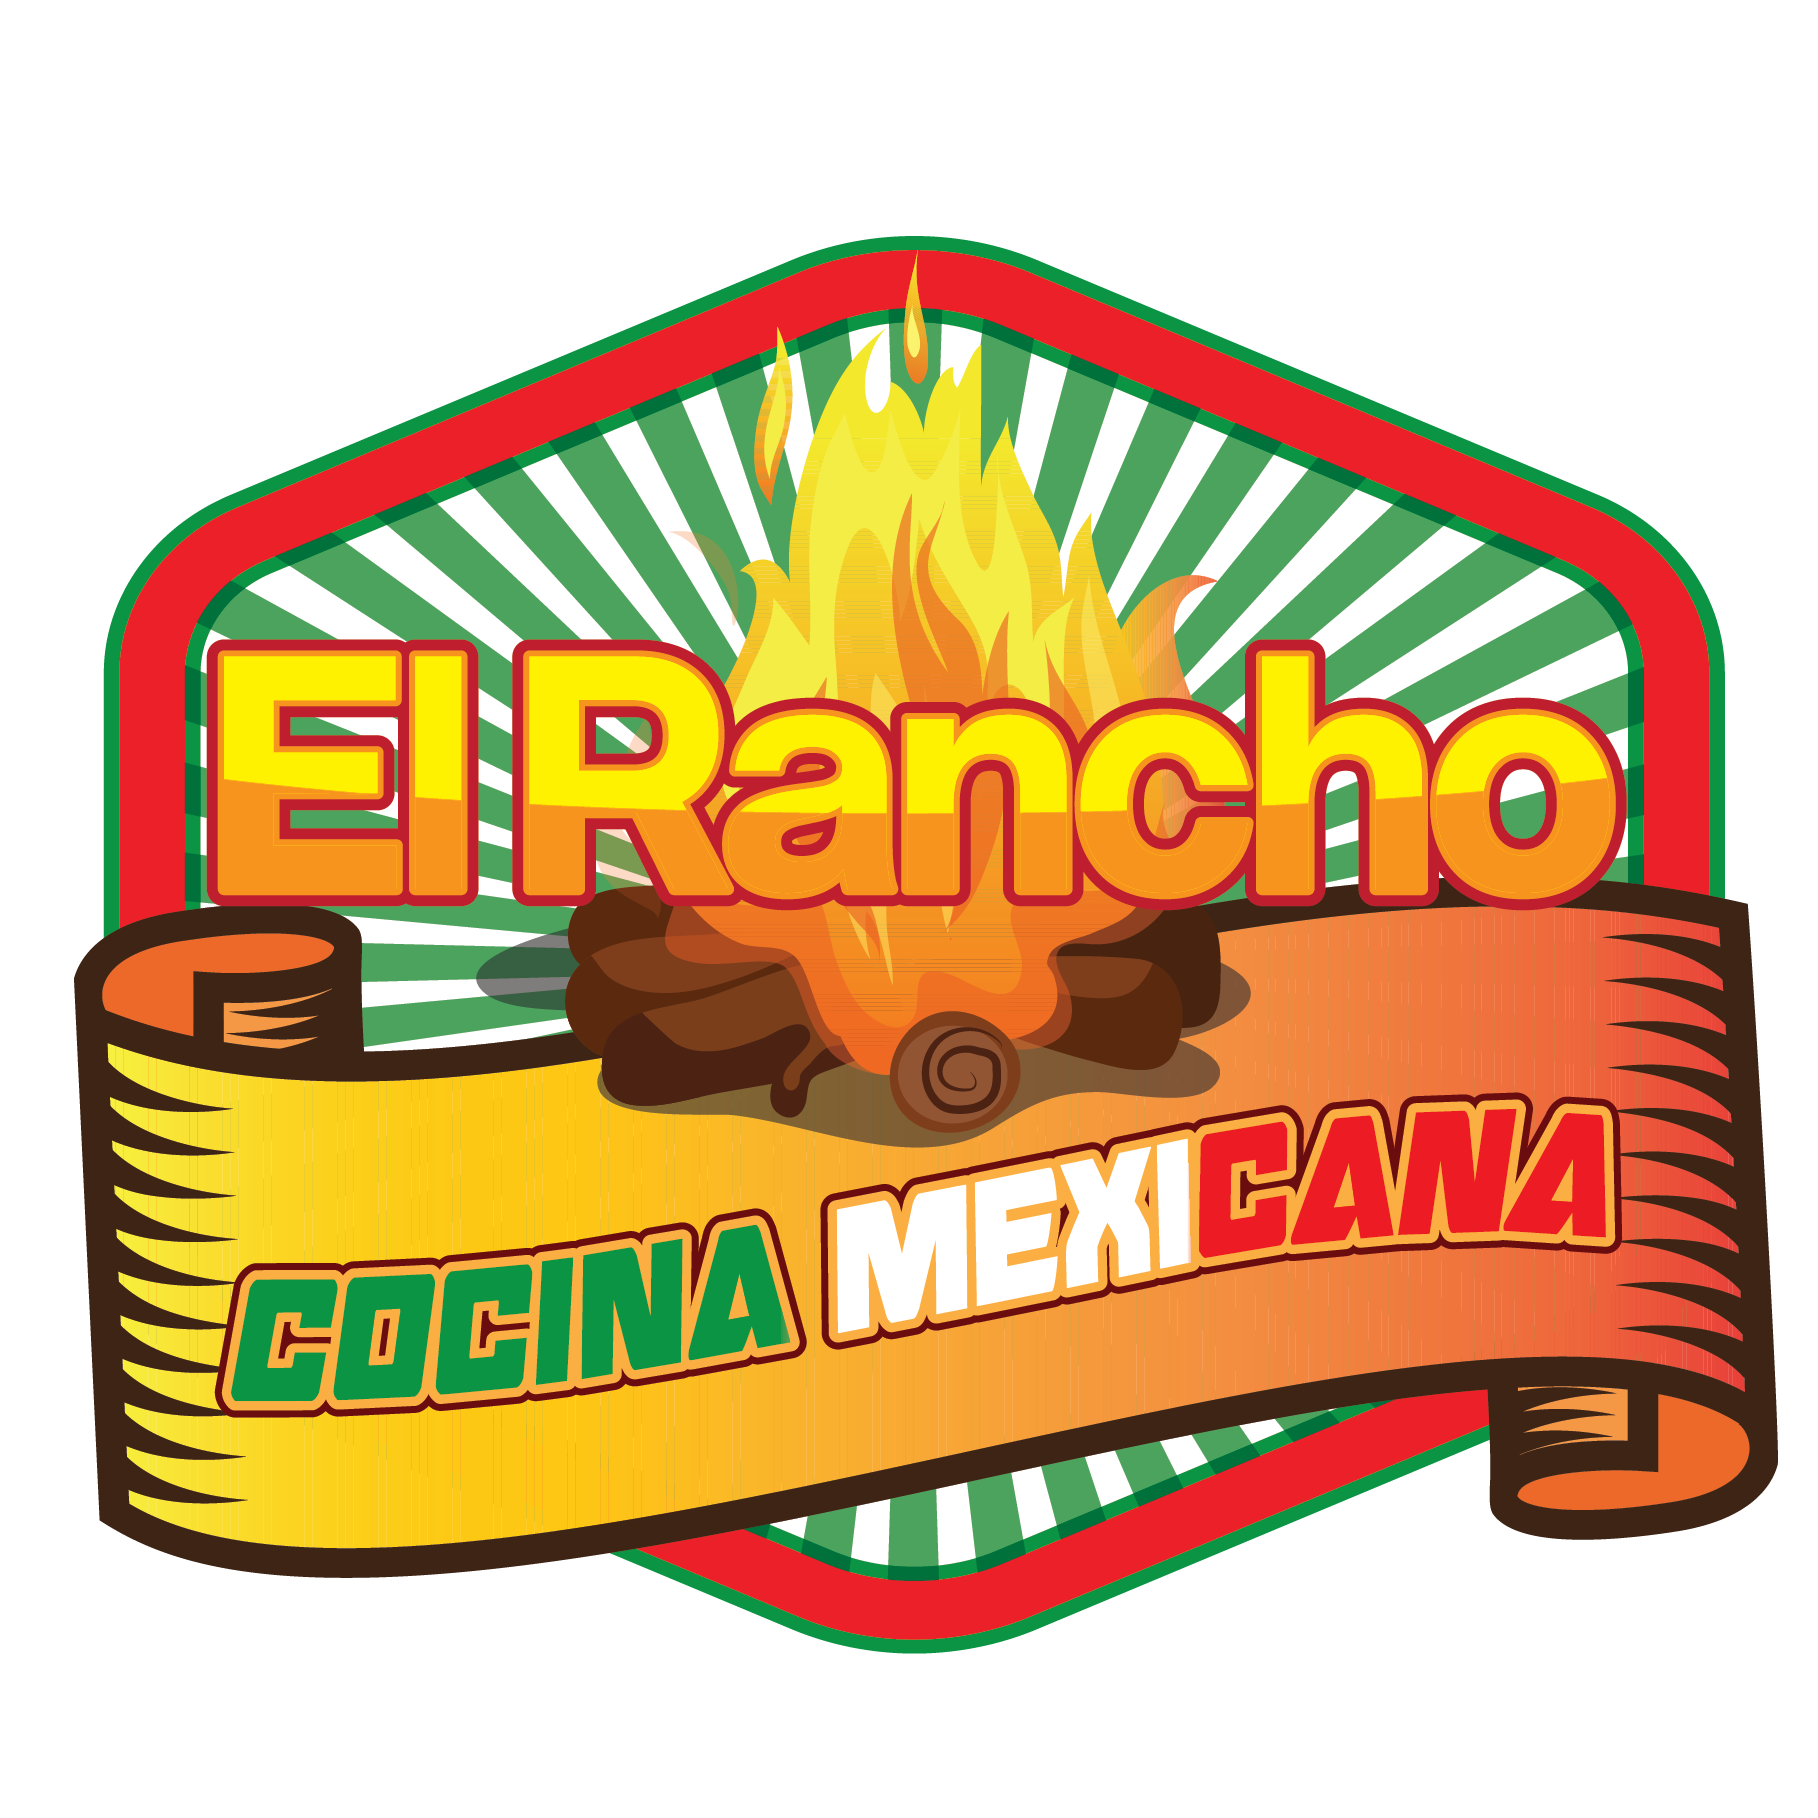 El Rancho Cocina Mexicana